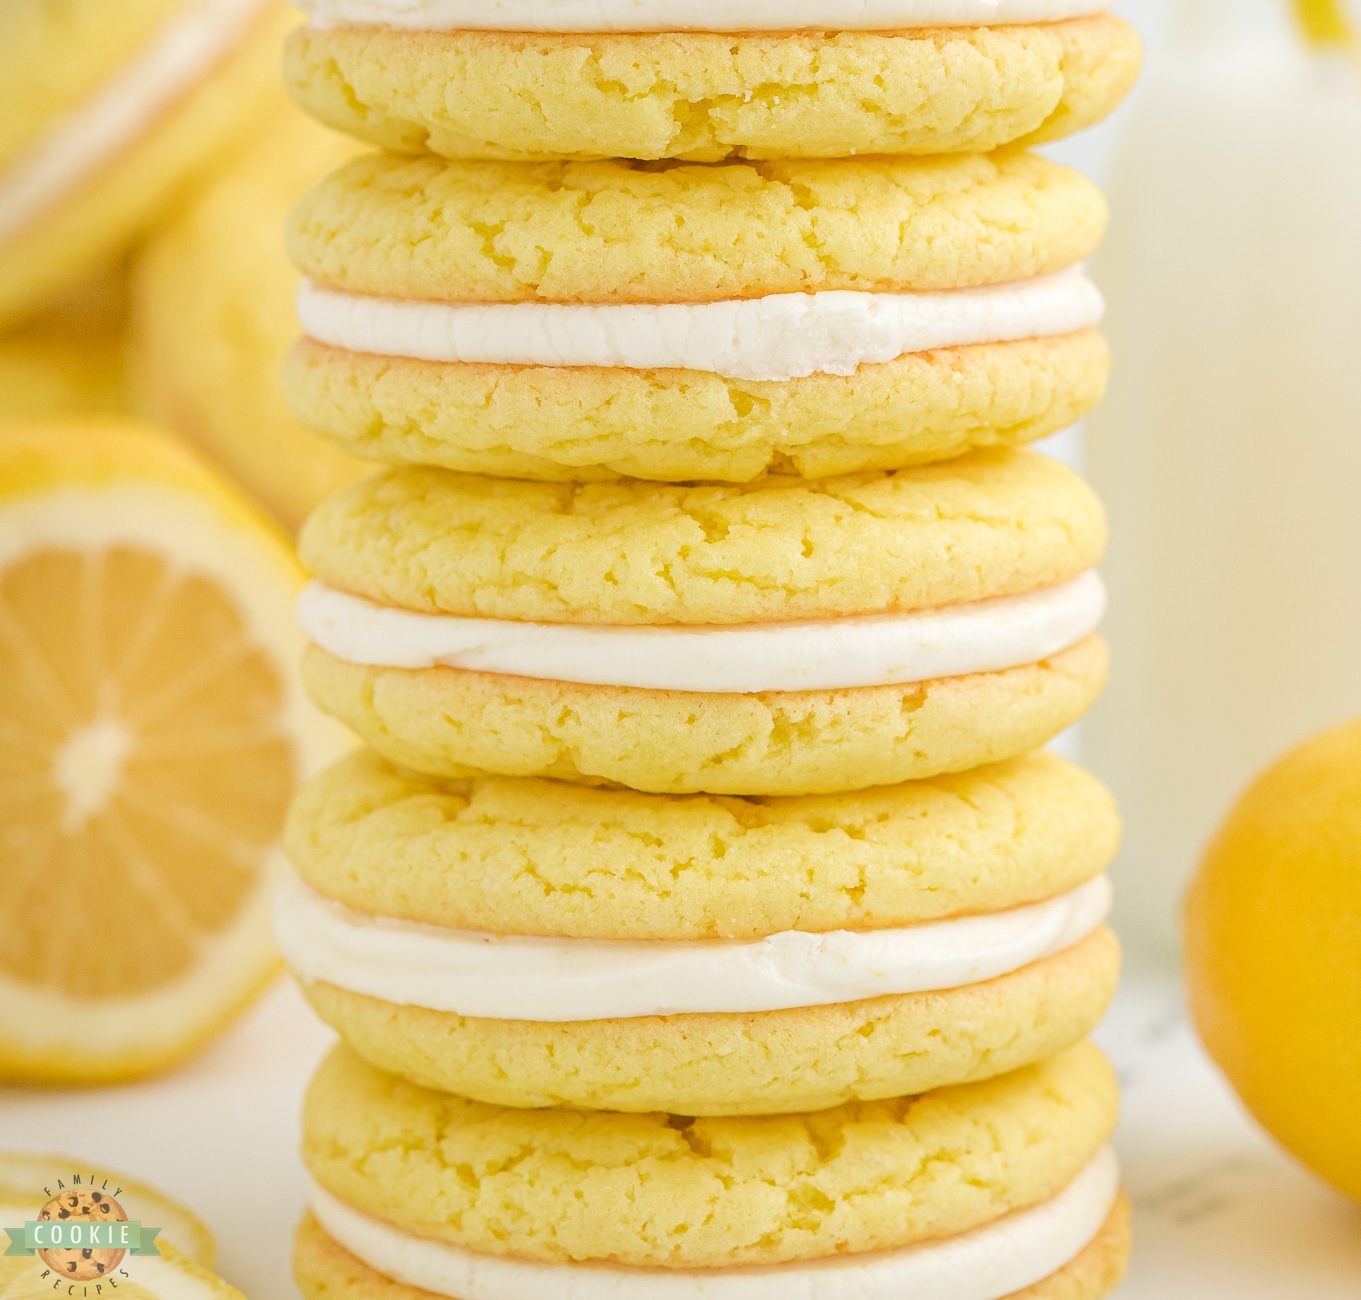 stack of lemon oreo cookies